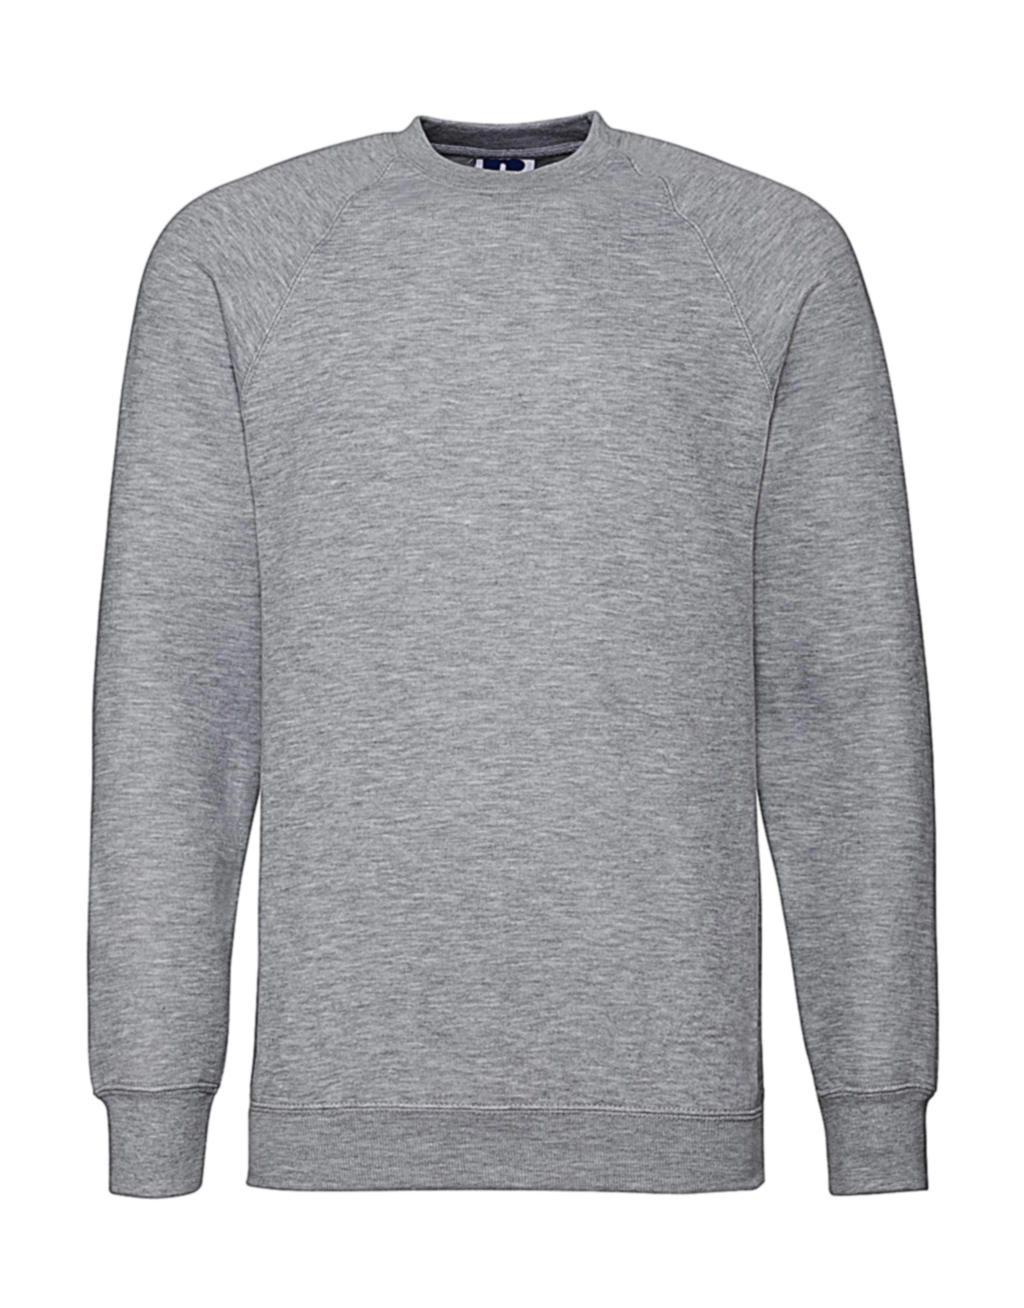 Classic Raglan Sweatshirt zum Besticken und Bedrucken in der Farbe Light Oxford mit Ihren Logo, Schriftzug oder Motiv.